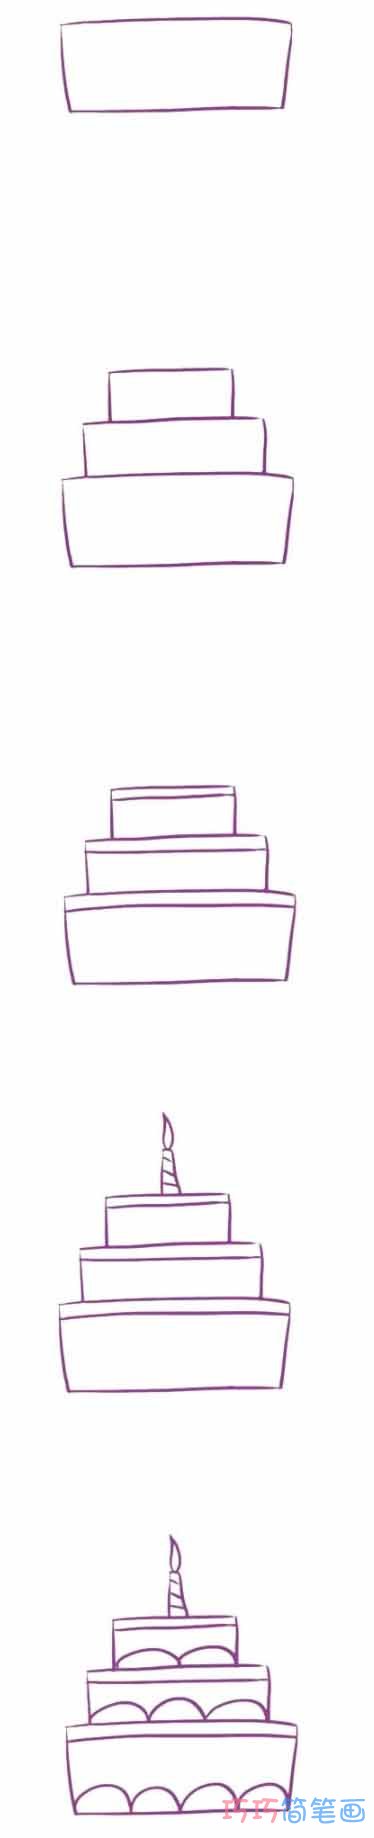 三层生日蛋糕怎么画简单 蛋糕简笔画图片